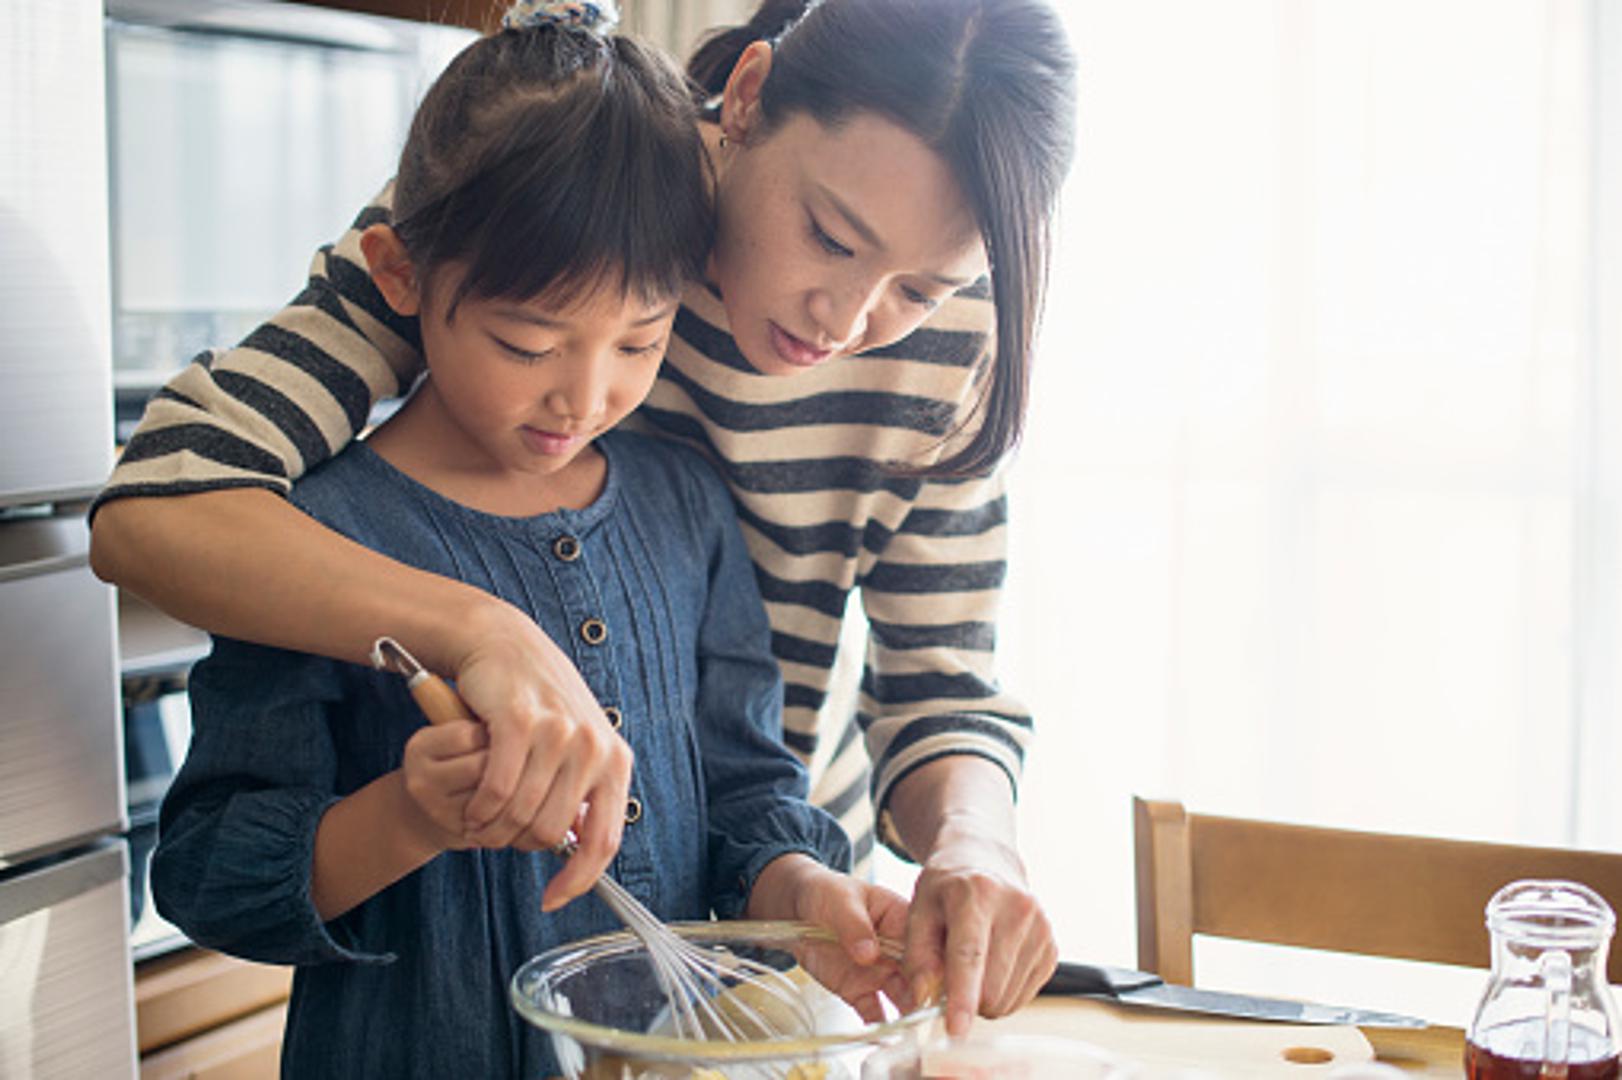 Iako suočeni s ubrzanom svakodnevnicom i brojnim obvezama, Japanci svaki slobodan trenutak provode sa svojom djecom. Svjesni činjenica da djeci brzo dosade neke namirnice, dopuštaju im više da eksperimentiraju s novim okusima i ne prisiljavaju ih da jedu nešto što ne vole, samo zato jer je zdravo. 